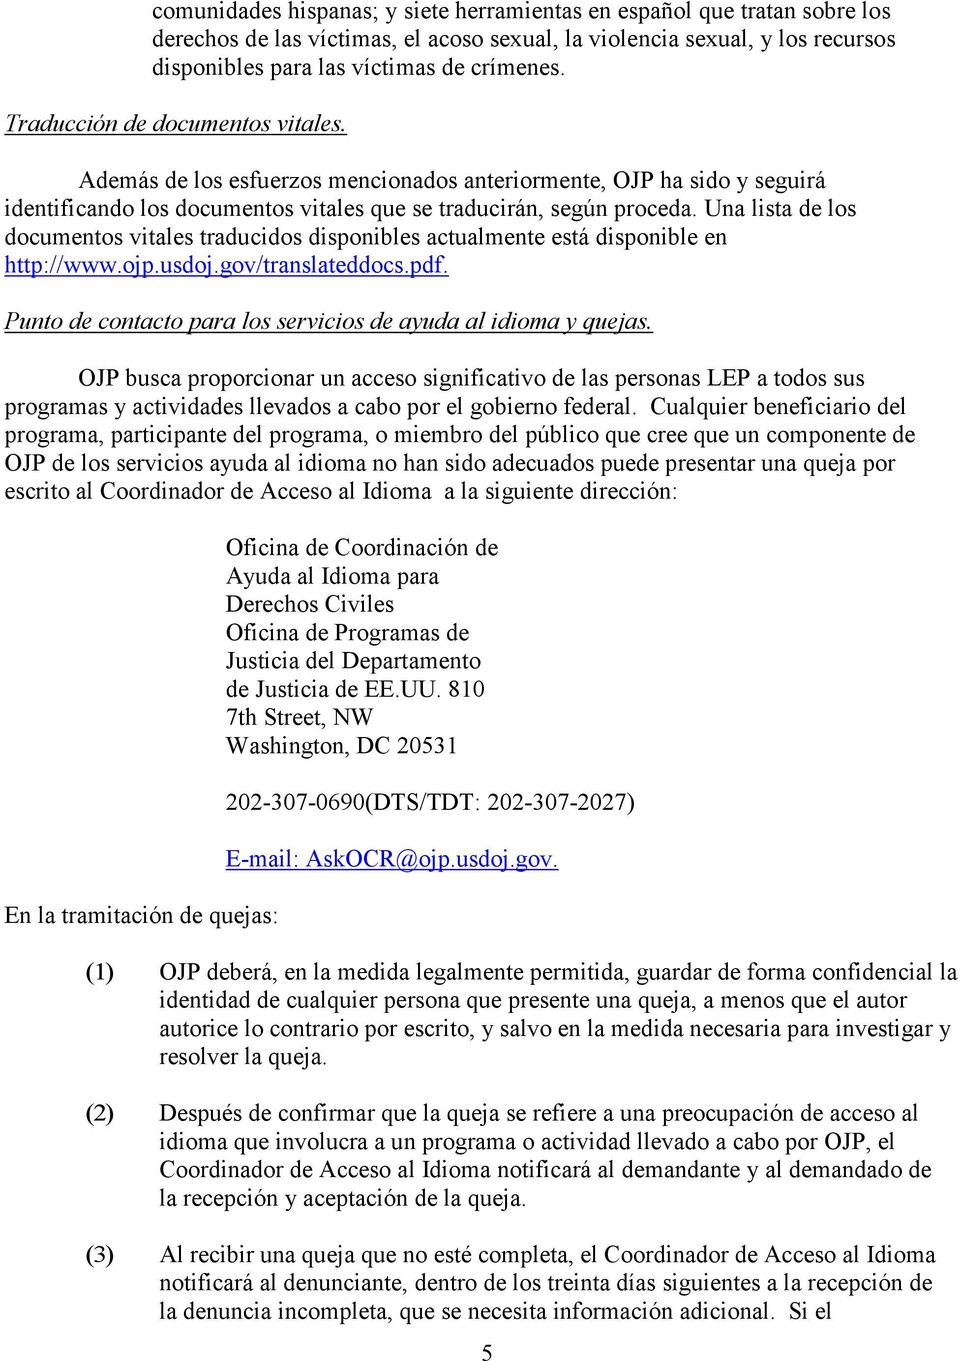 Una lista de los documentos vitales traducidos disponibles actualmente está disponible en http://www.ojp.usdoj.gov/translateddocs.pdf. Punto de contacto para los servicios de ayuda al idioma y quejas.